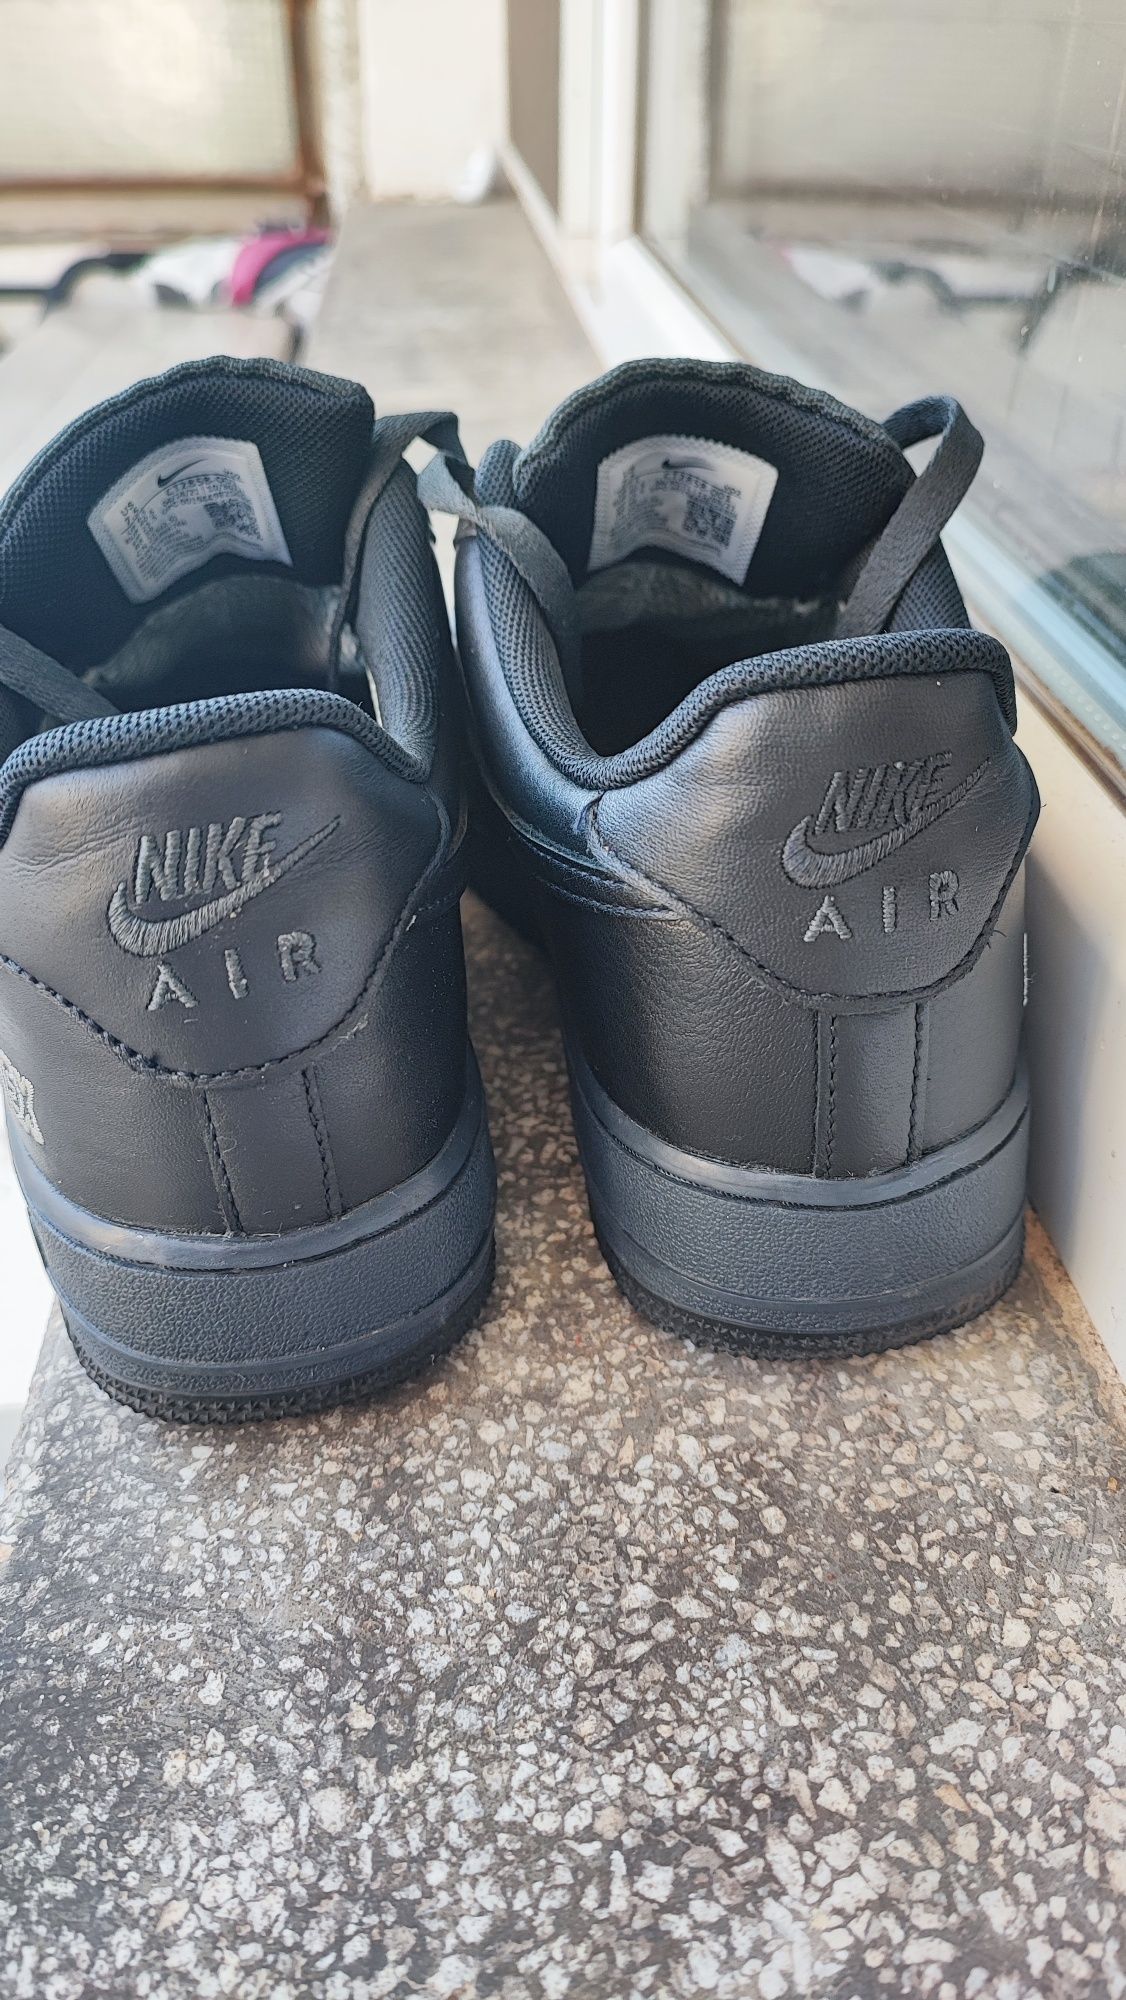 Nike AIR Force 1 Goretex